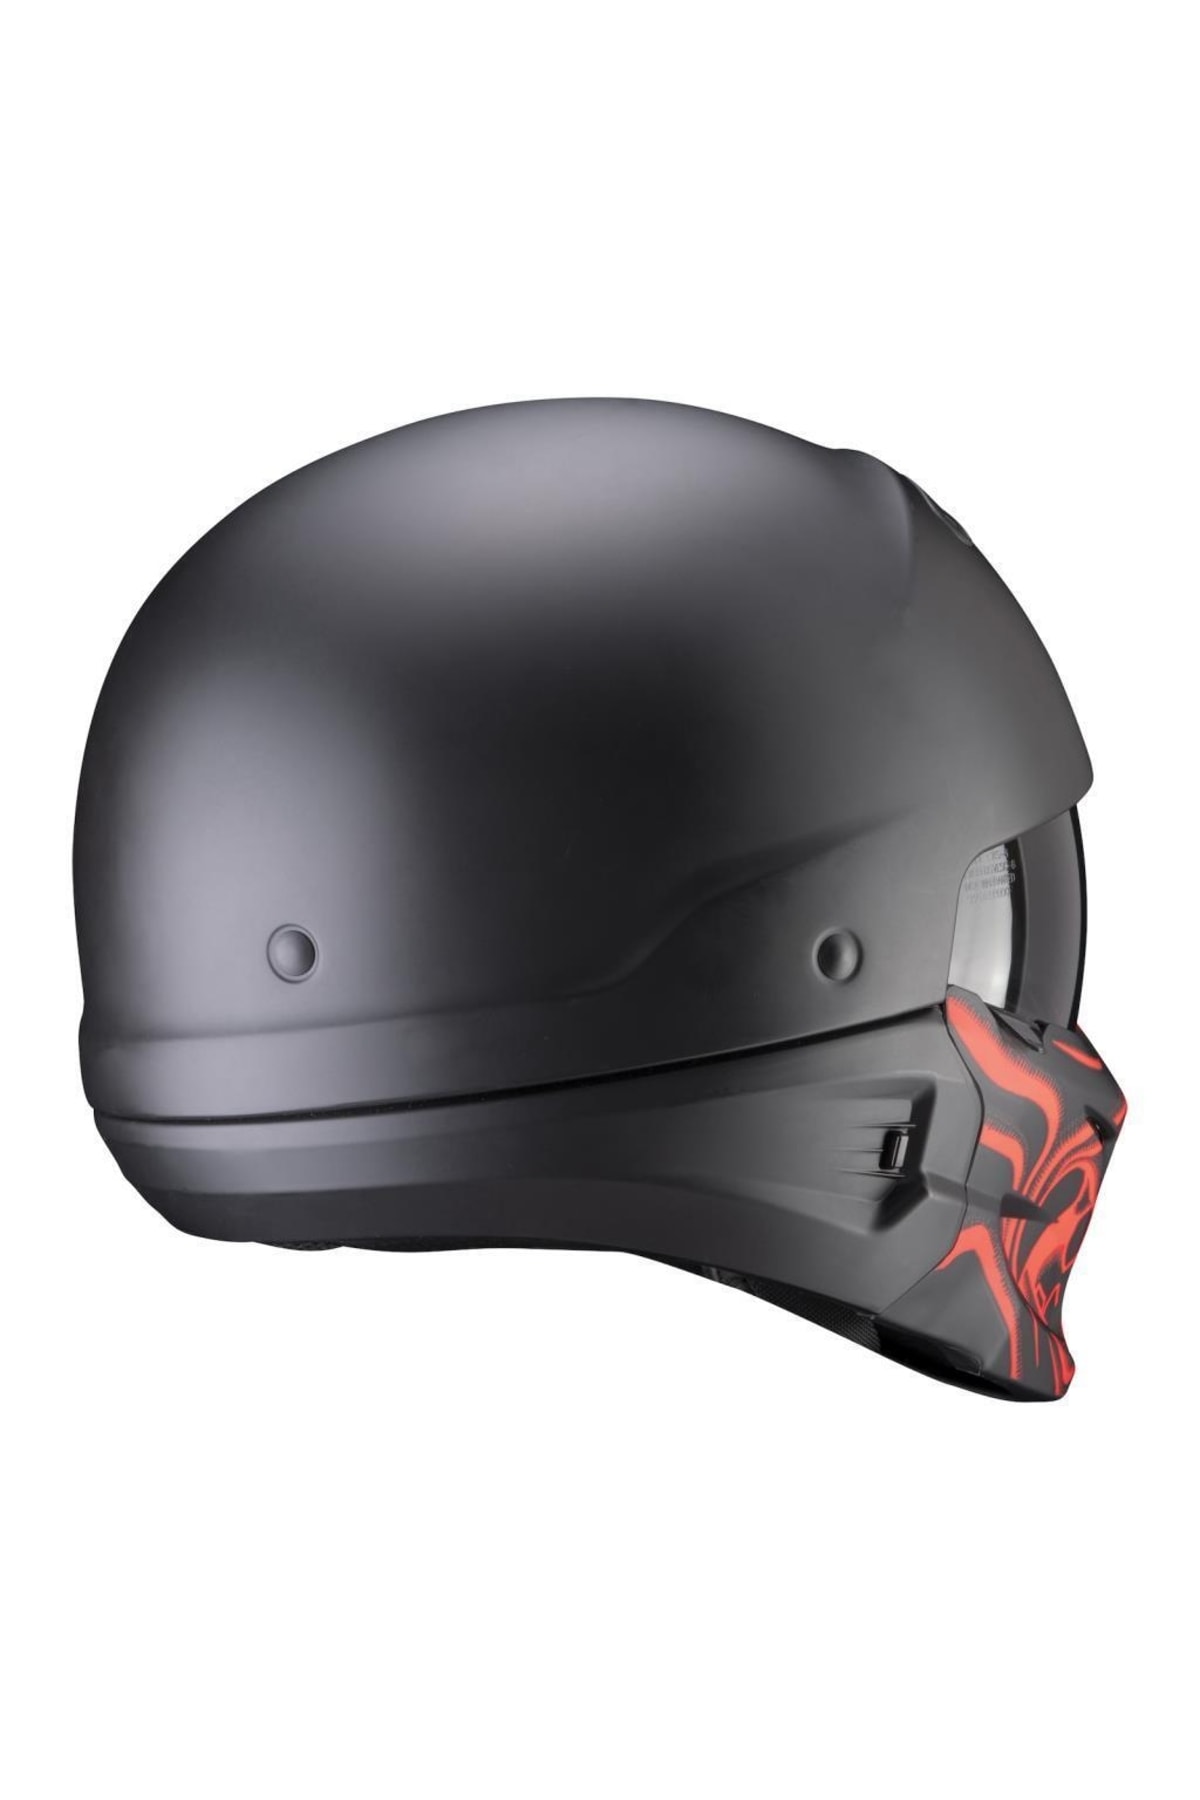 Scorpion Exo Combat Evo Samurai Moduler Motosiklet Kaskı (mat Siyah Kırmızı) NY10056